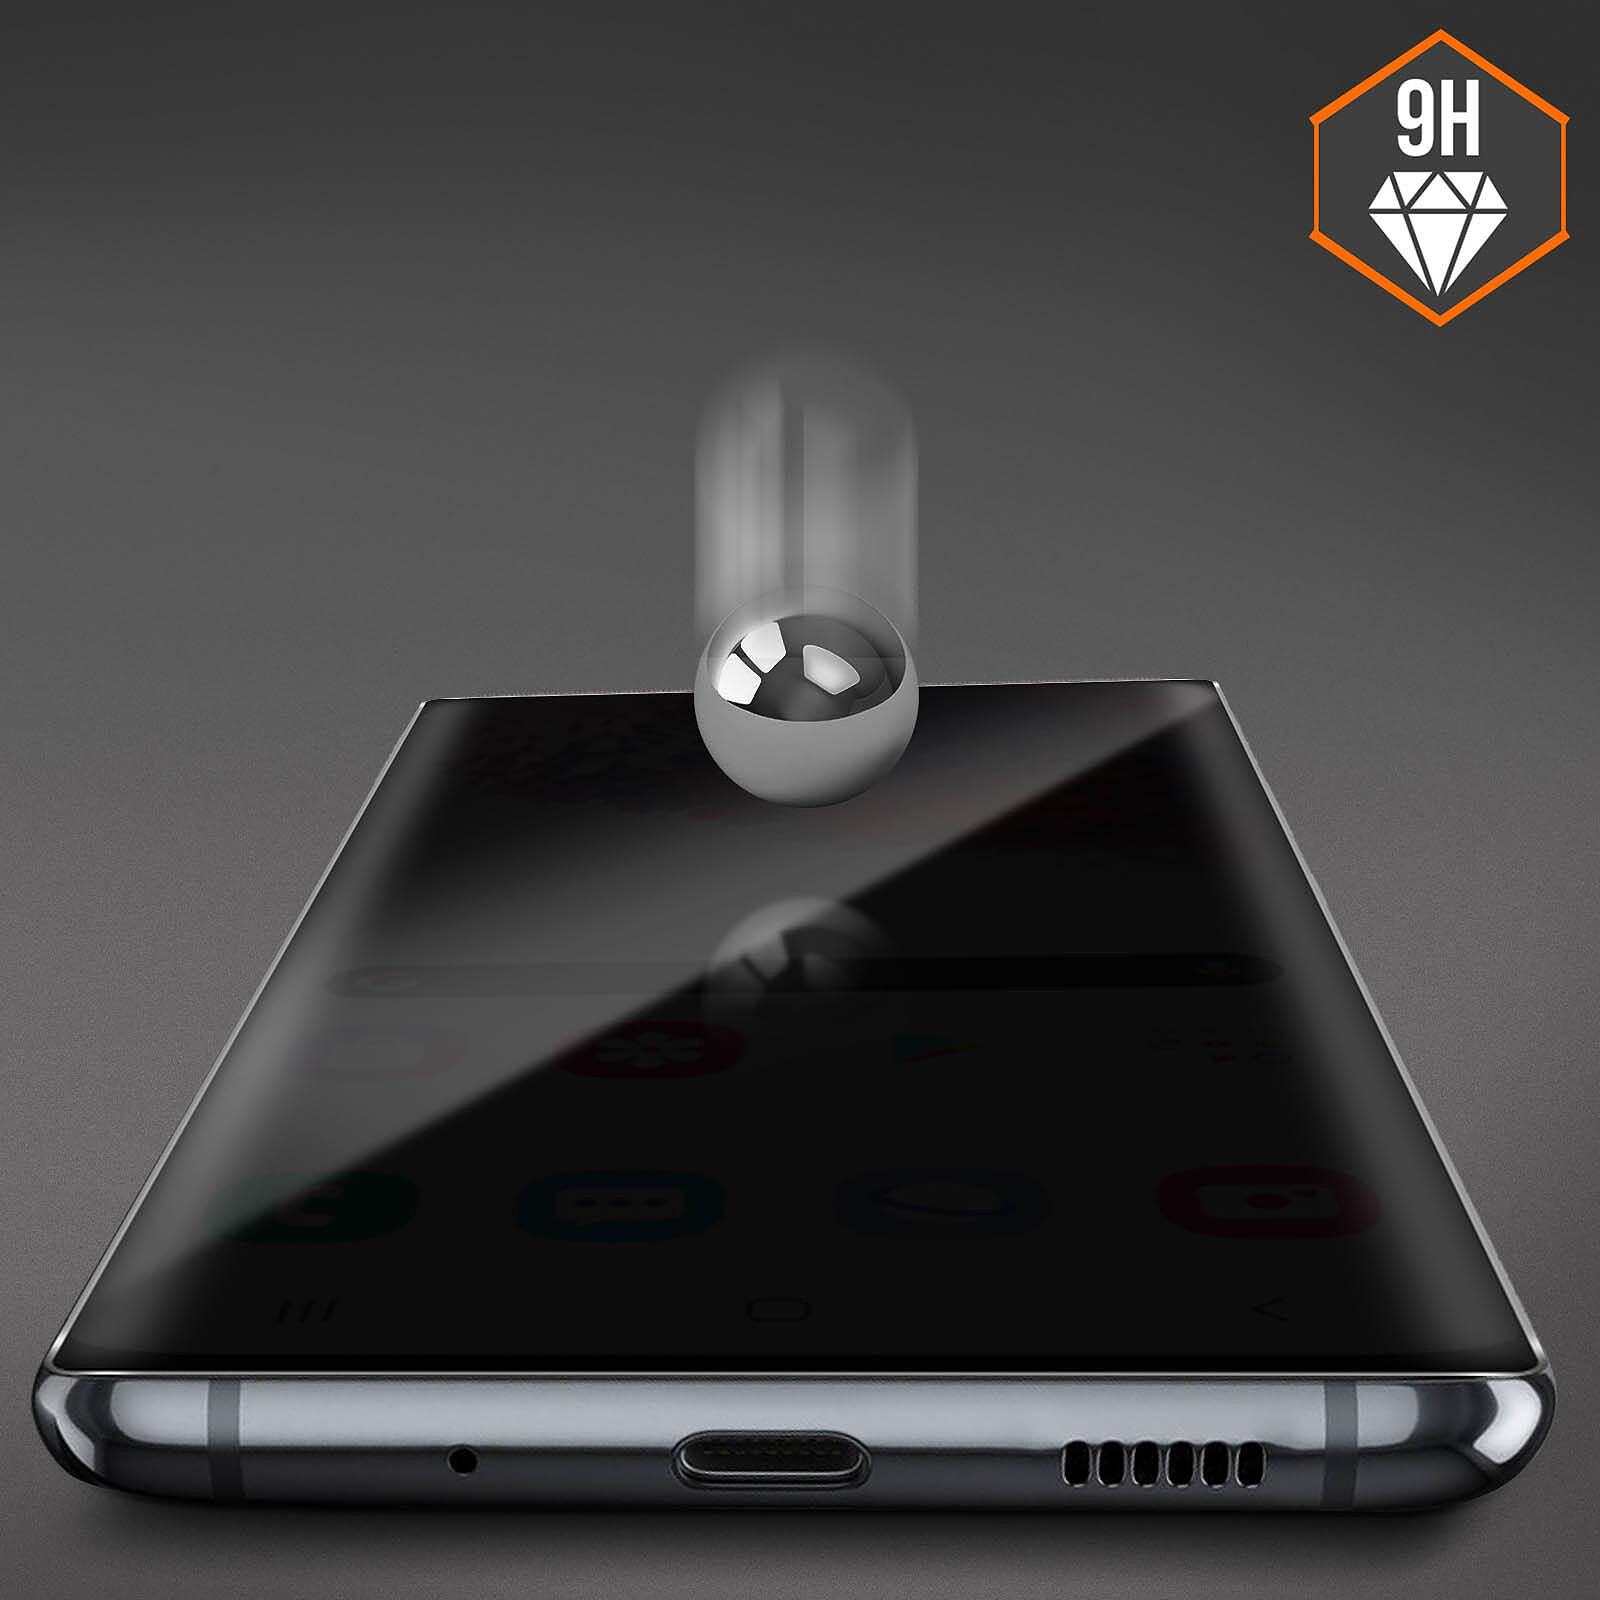 Avizar Film pour Samsung Galaxy S21 Ultra Verre Trempé 9H Incurvé  Transparent Contour Noir - Protection écran - LDLC